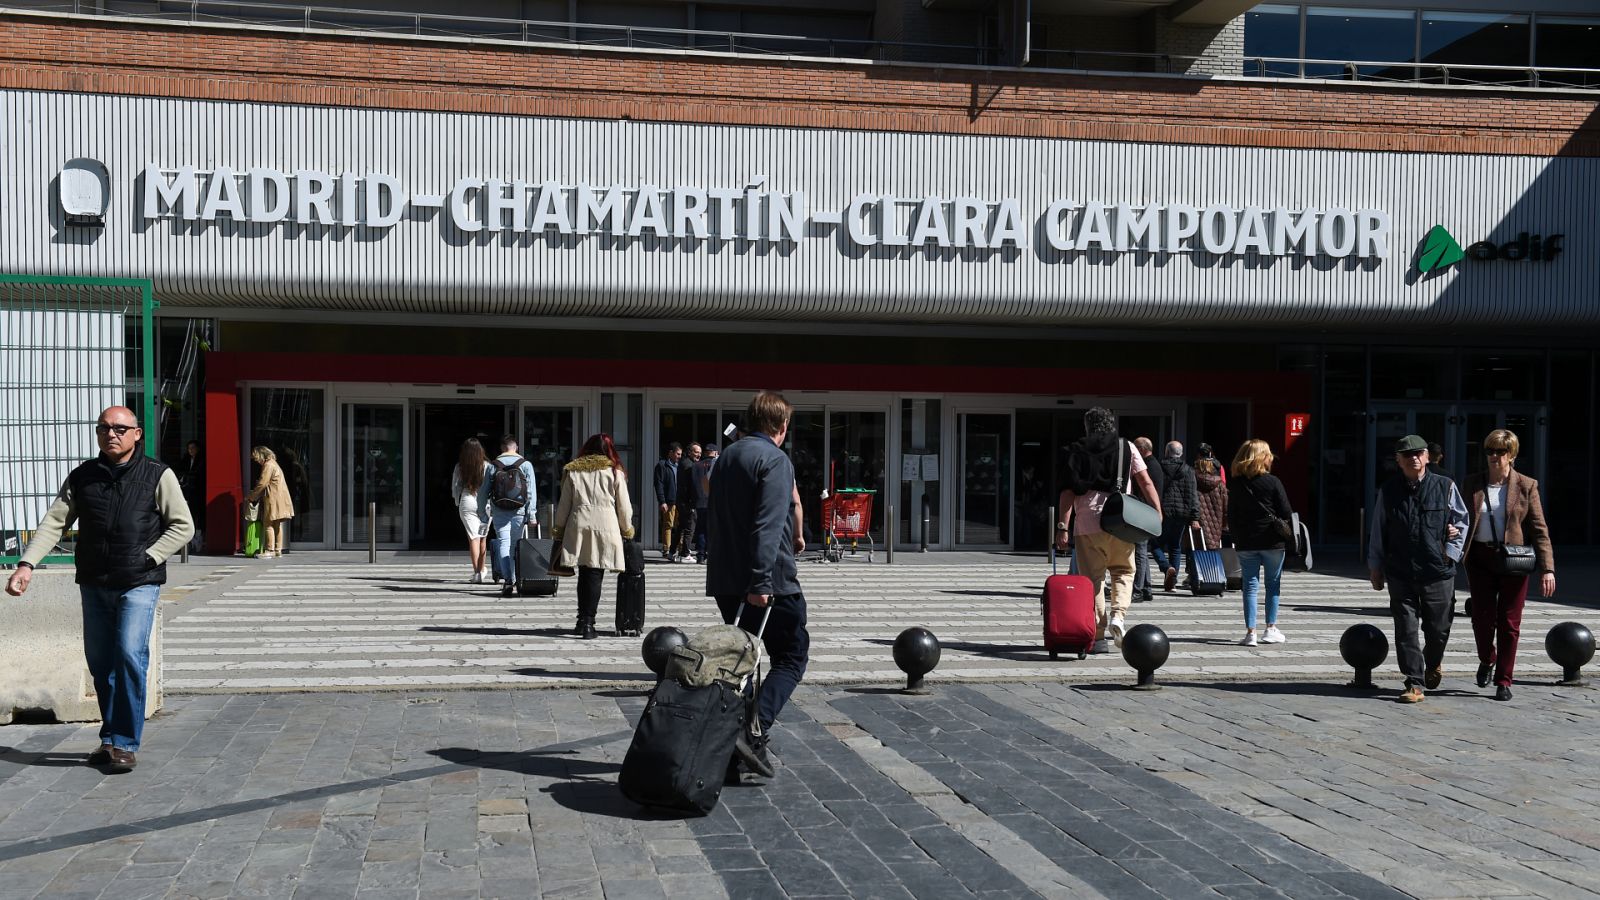 Entrada a la estación Madrid-Chamartín-Clara Campoamor